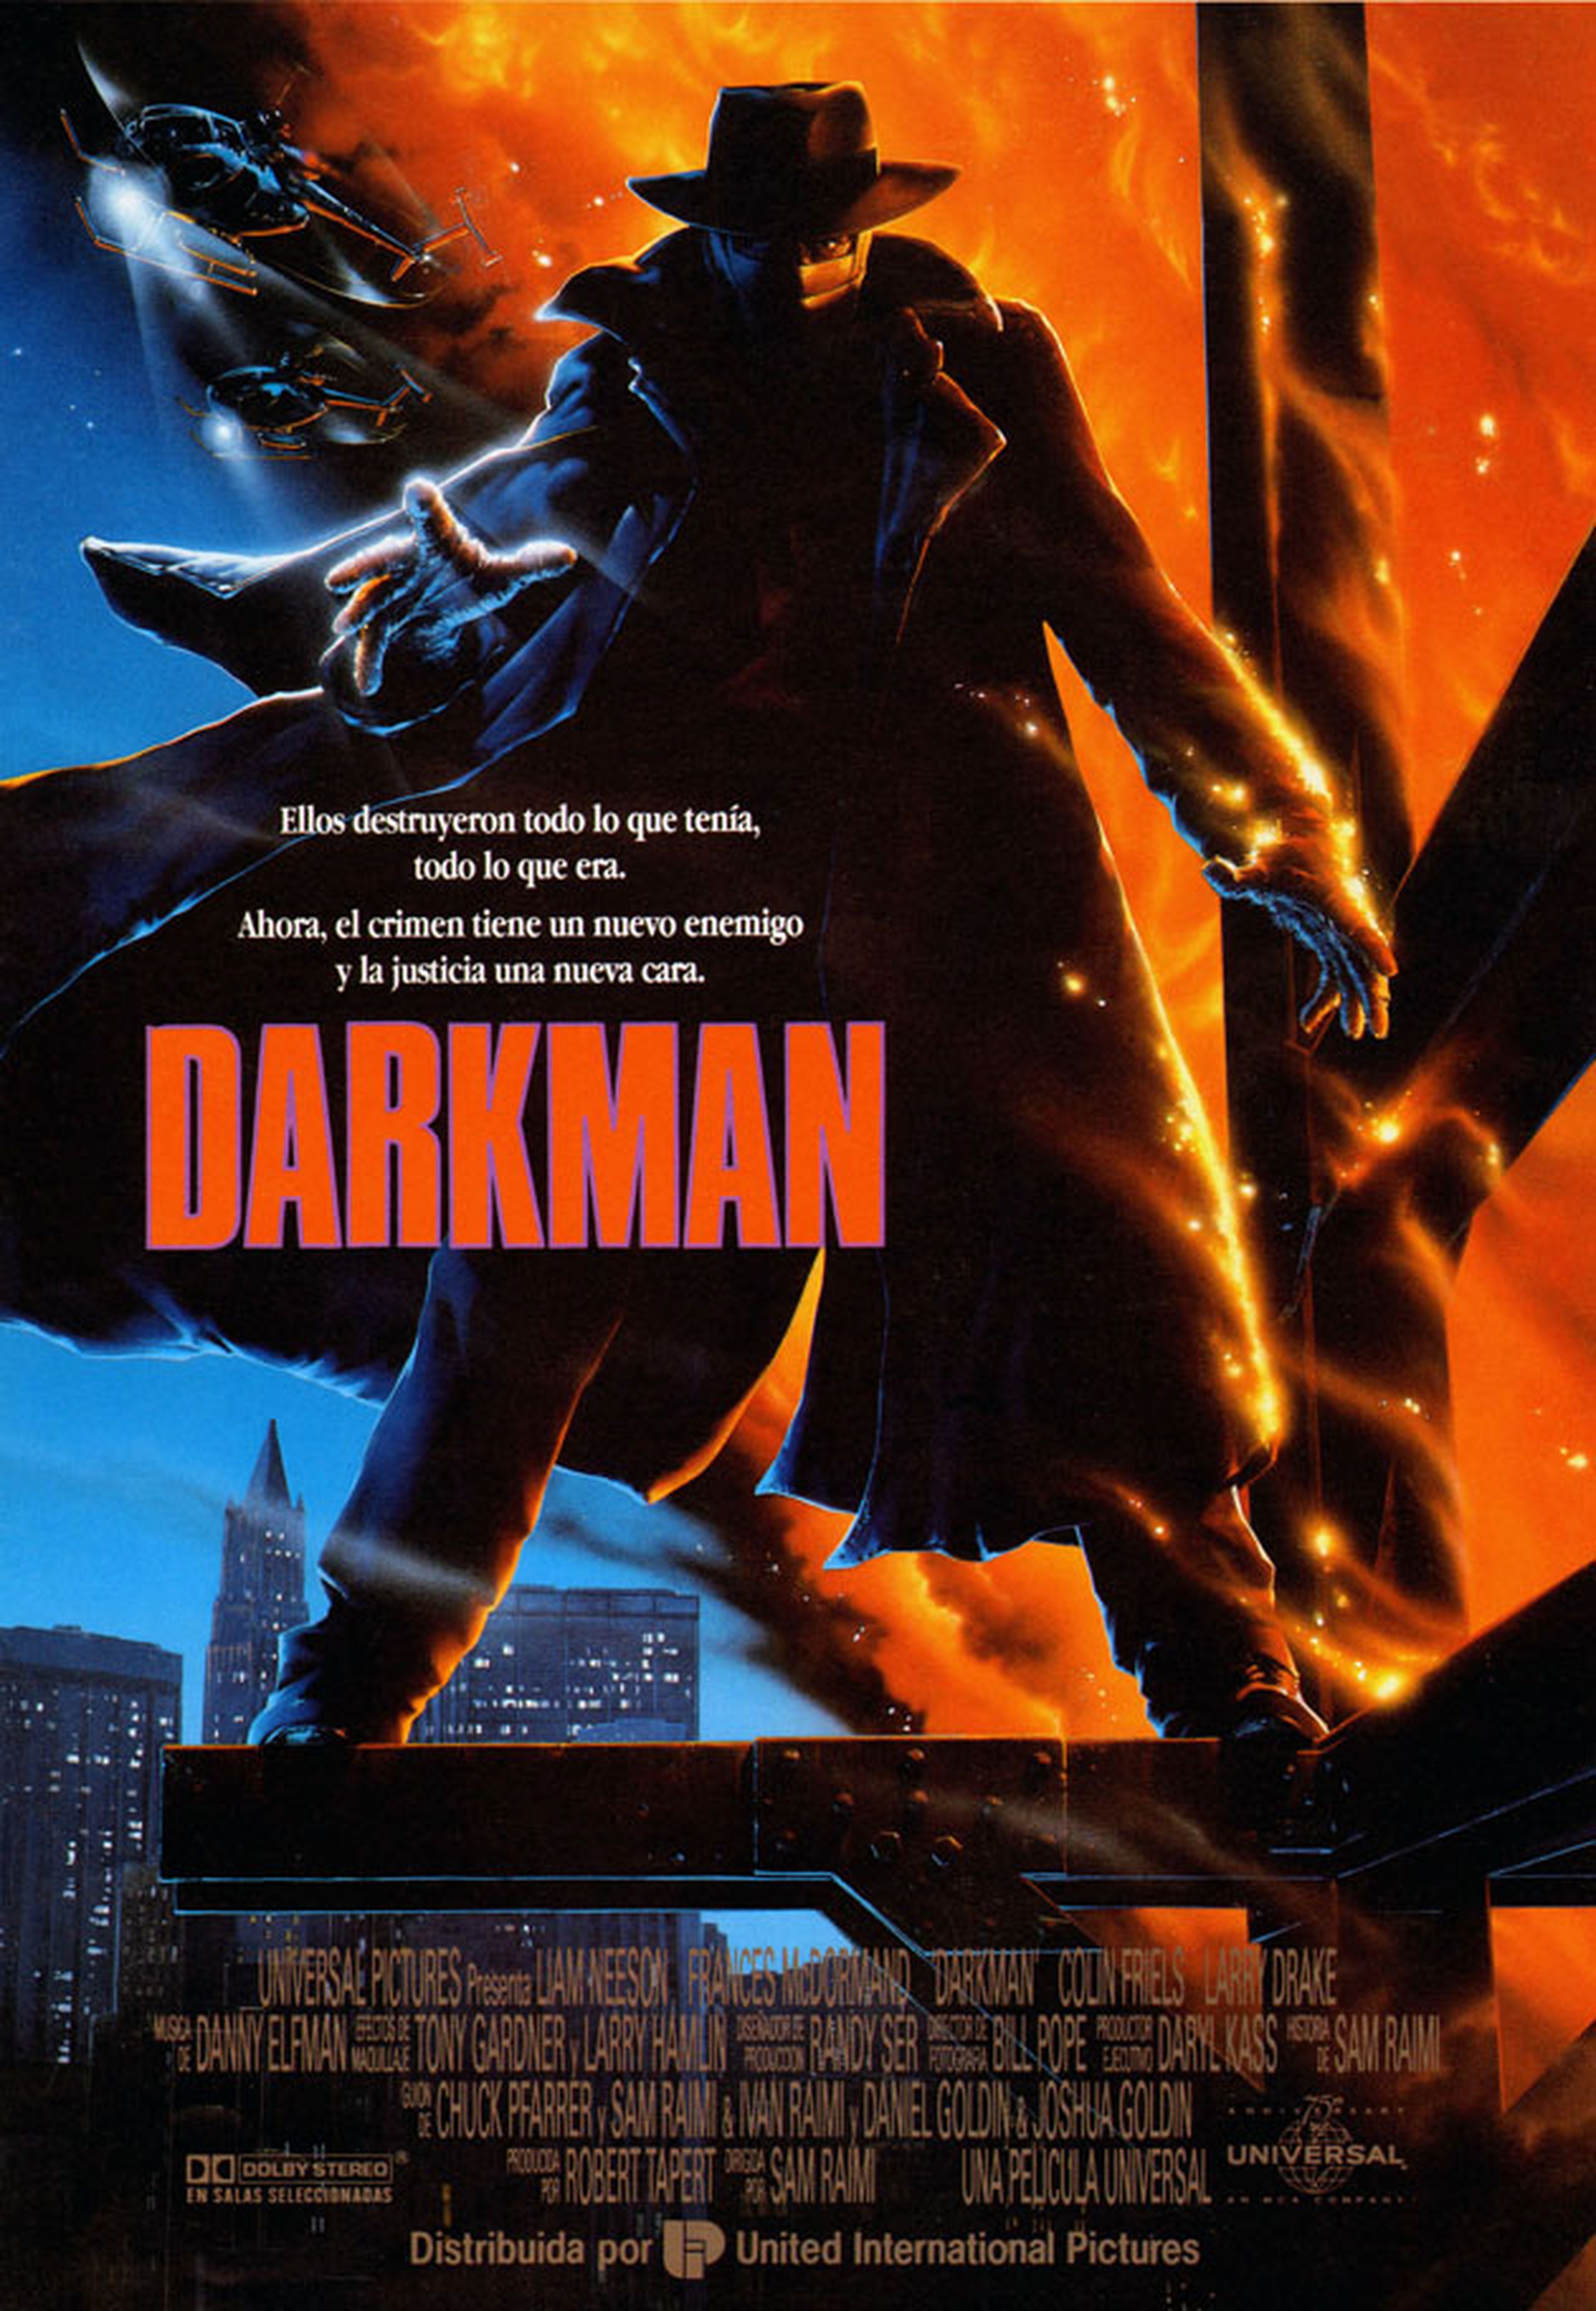 Darkman - Crítica de la película del superhéroe oscuro de Sam Raimi